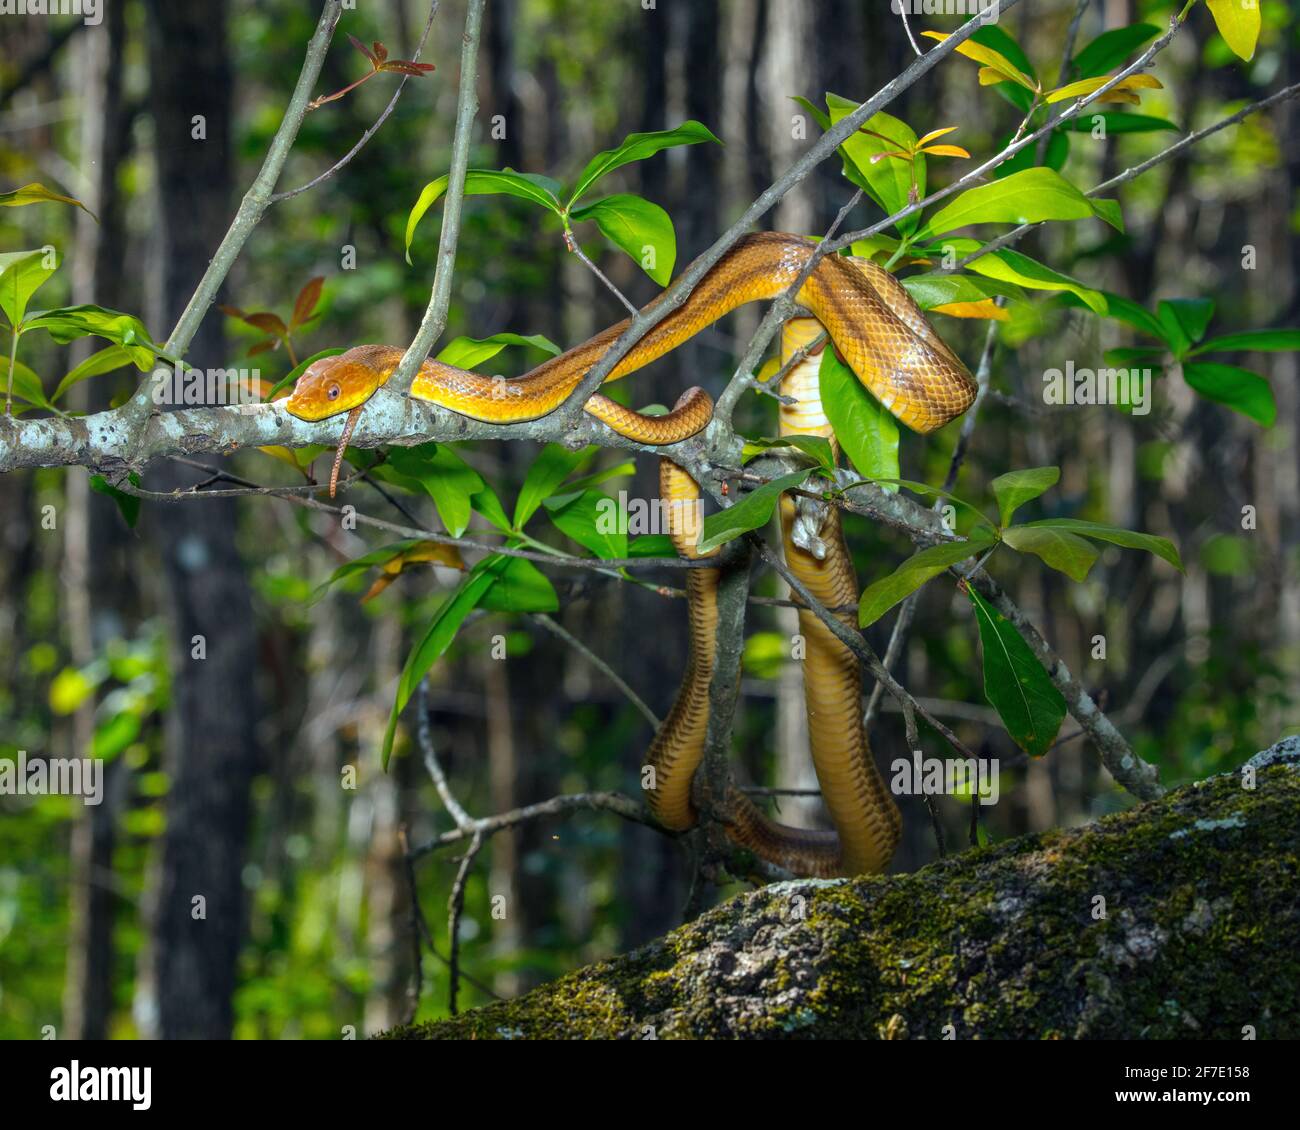 Eine gelbe Ostrattenschlange, Pantherophis alleghaniensis, frickt in einem Sumpf. Stockfoto